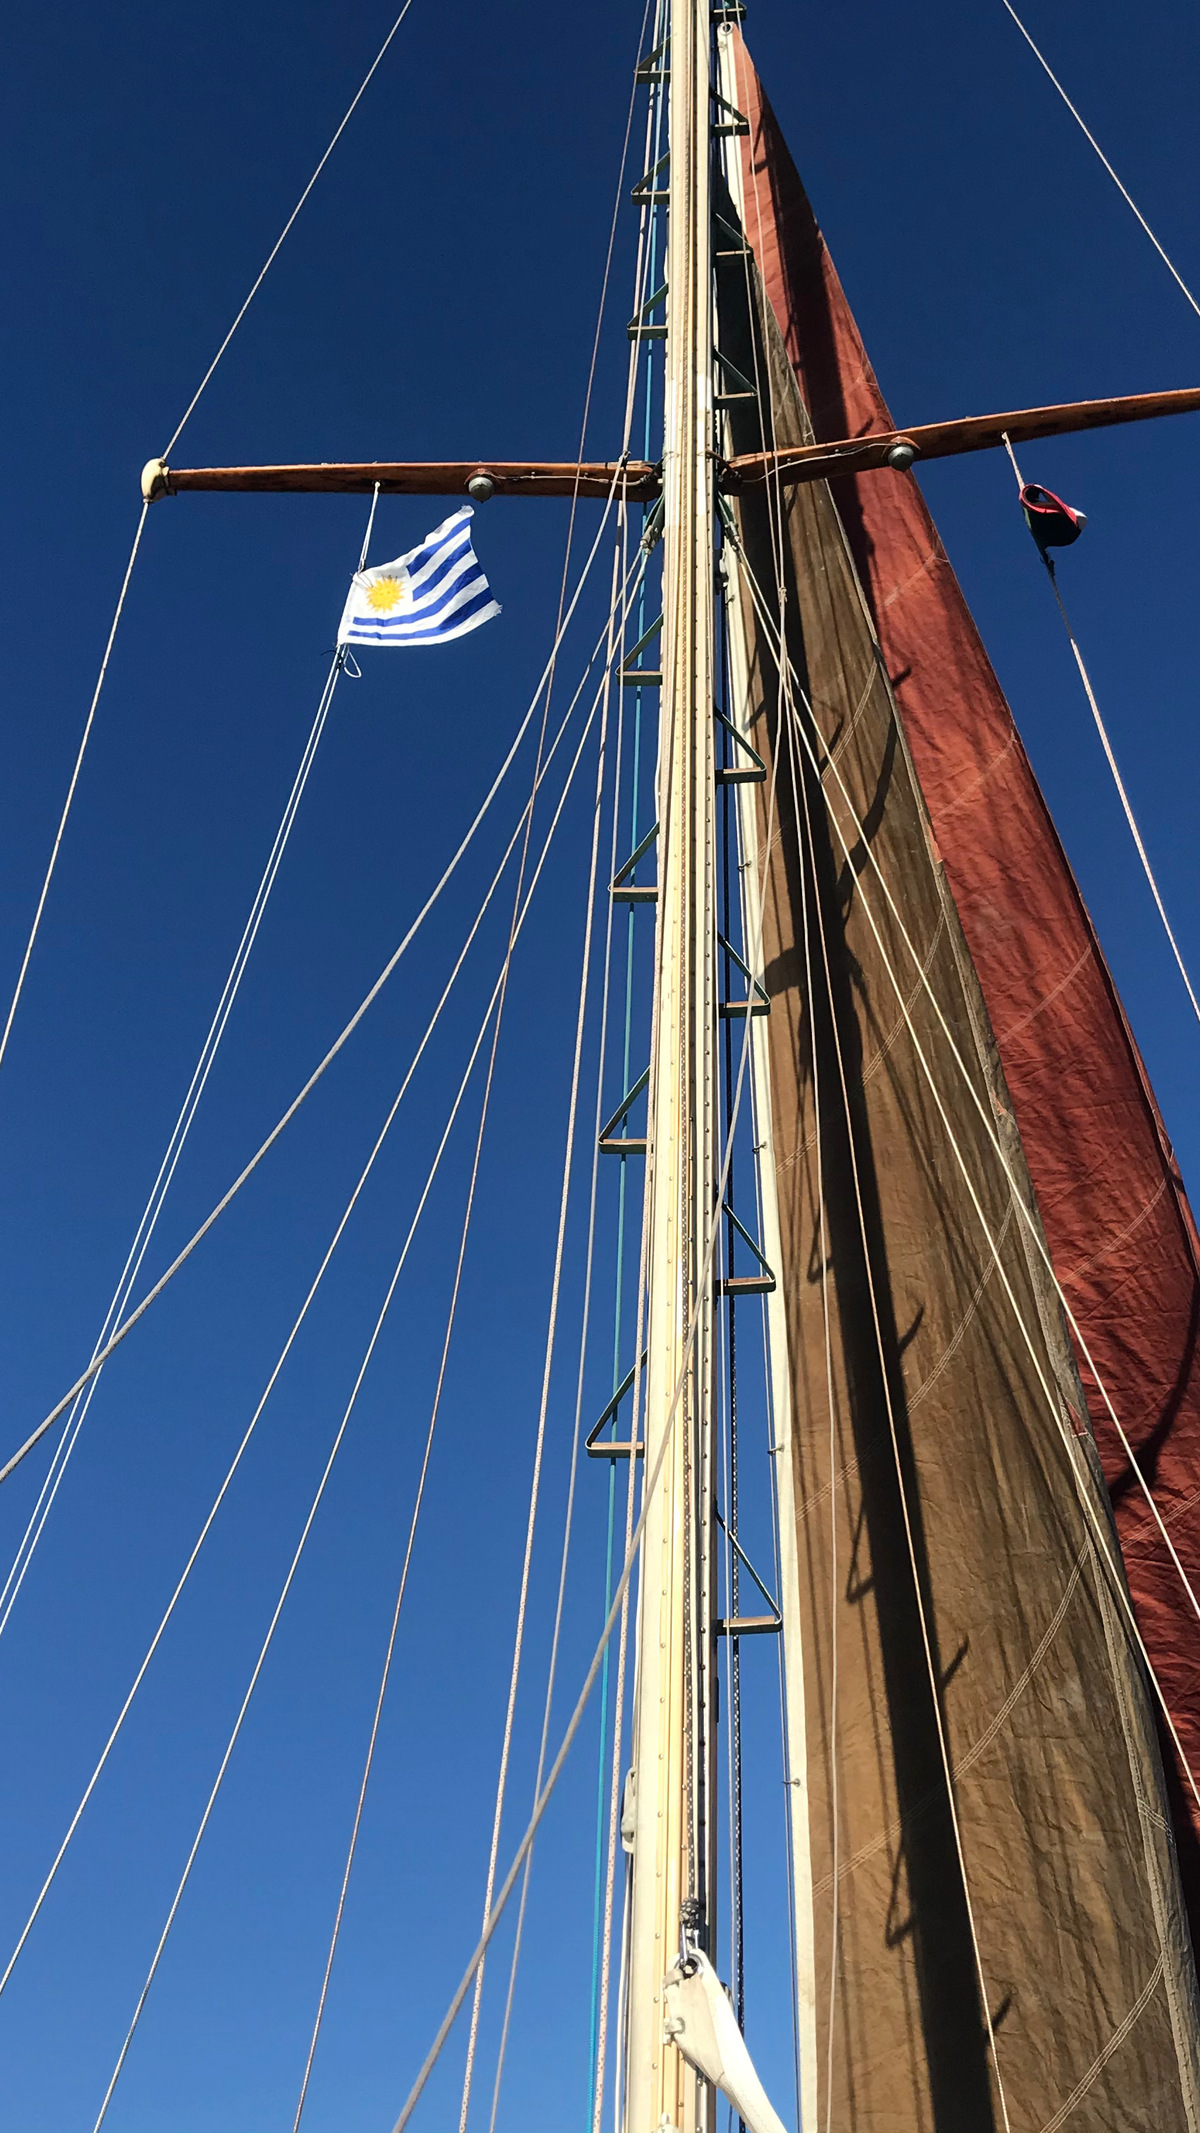 bandera uruguaya volando con brisa